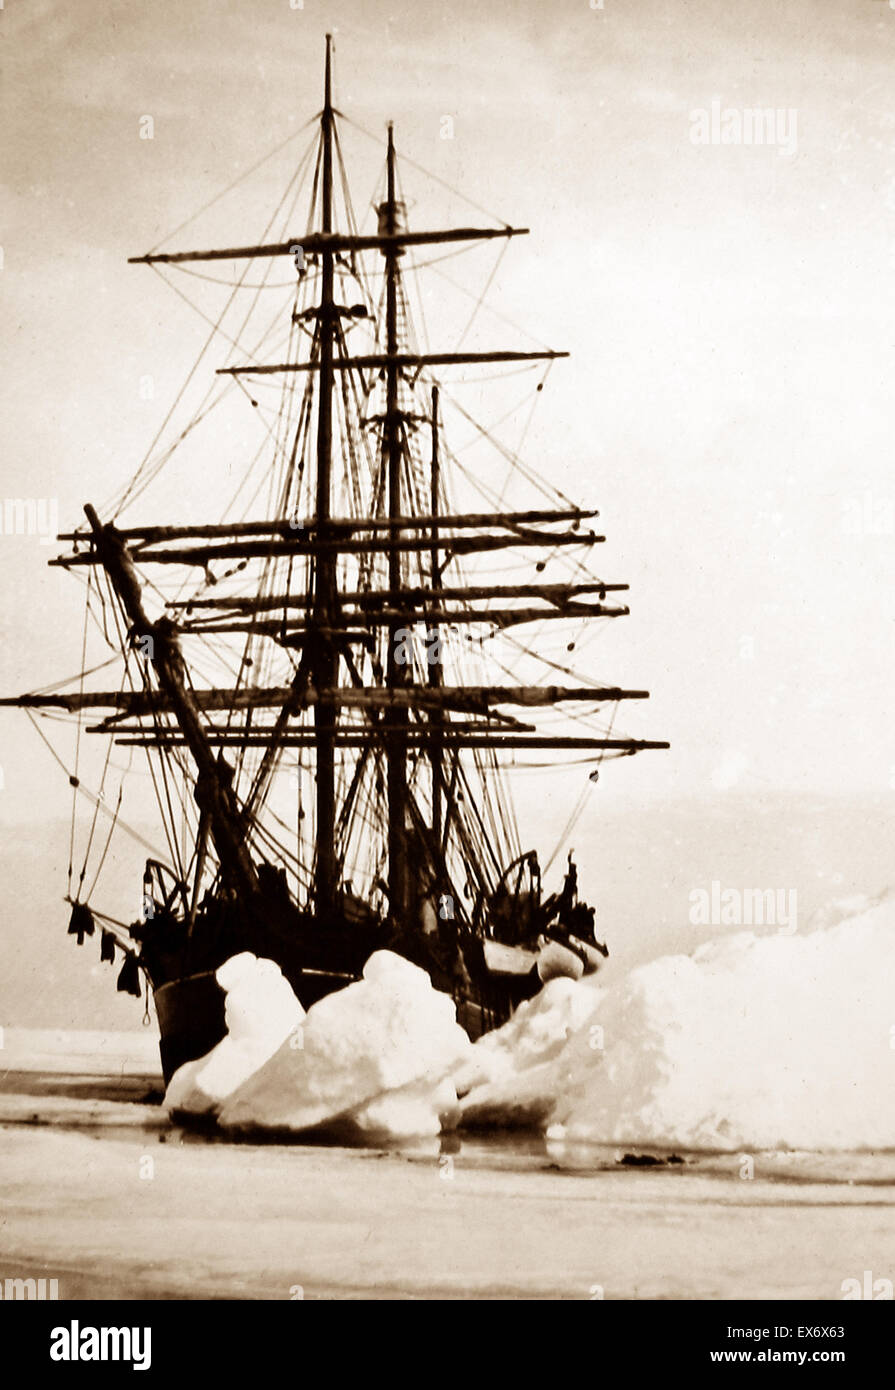 Un barco ballenero cerca de Groenlandia - época victoriana Foto de stock